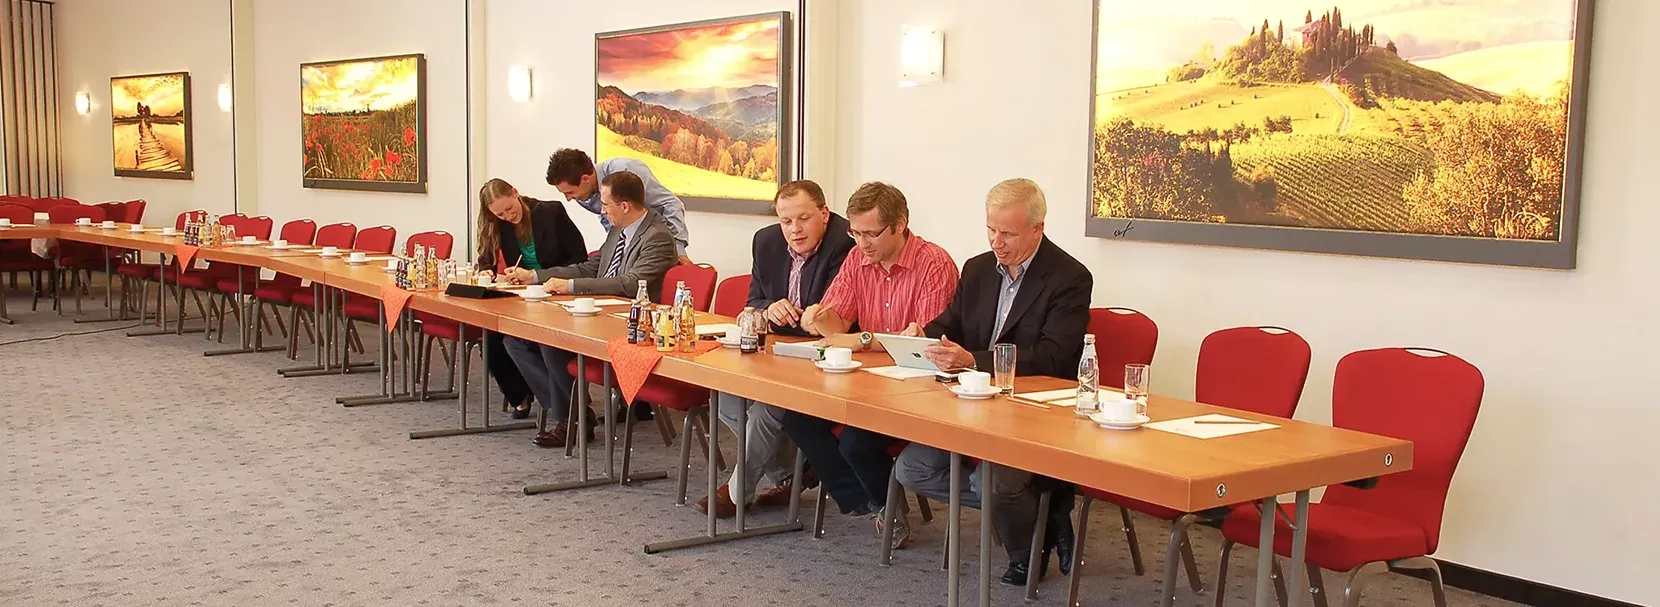 Tagungen und Seminare im Landhotel Behre bei Hannover veranstalten